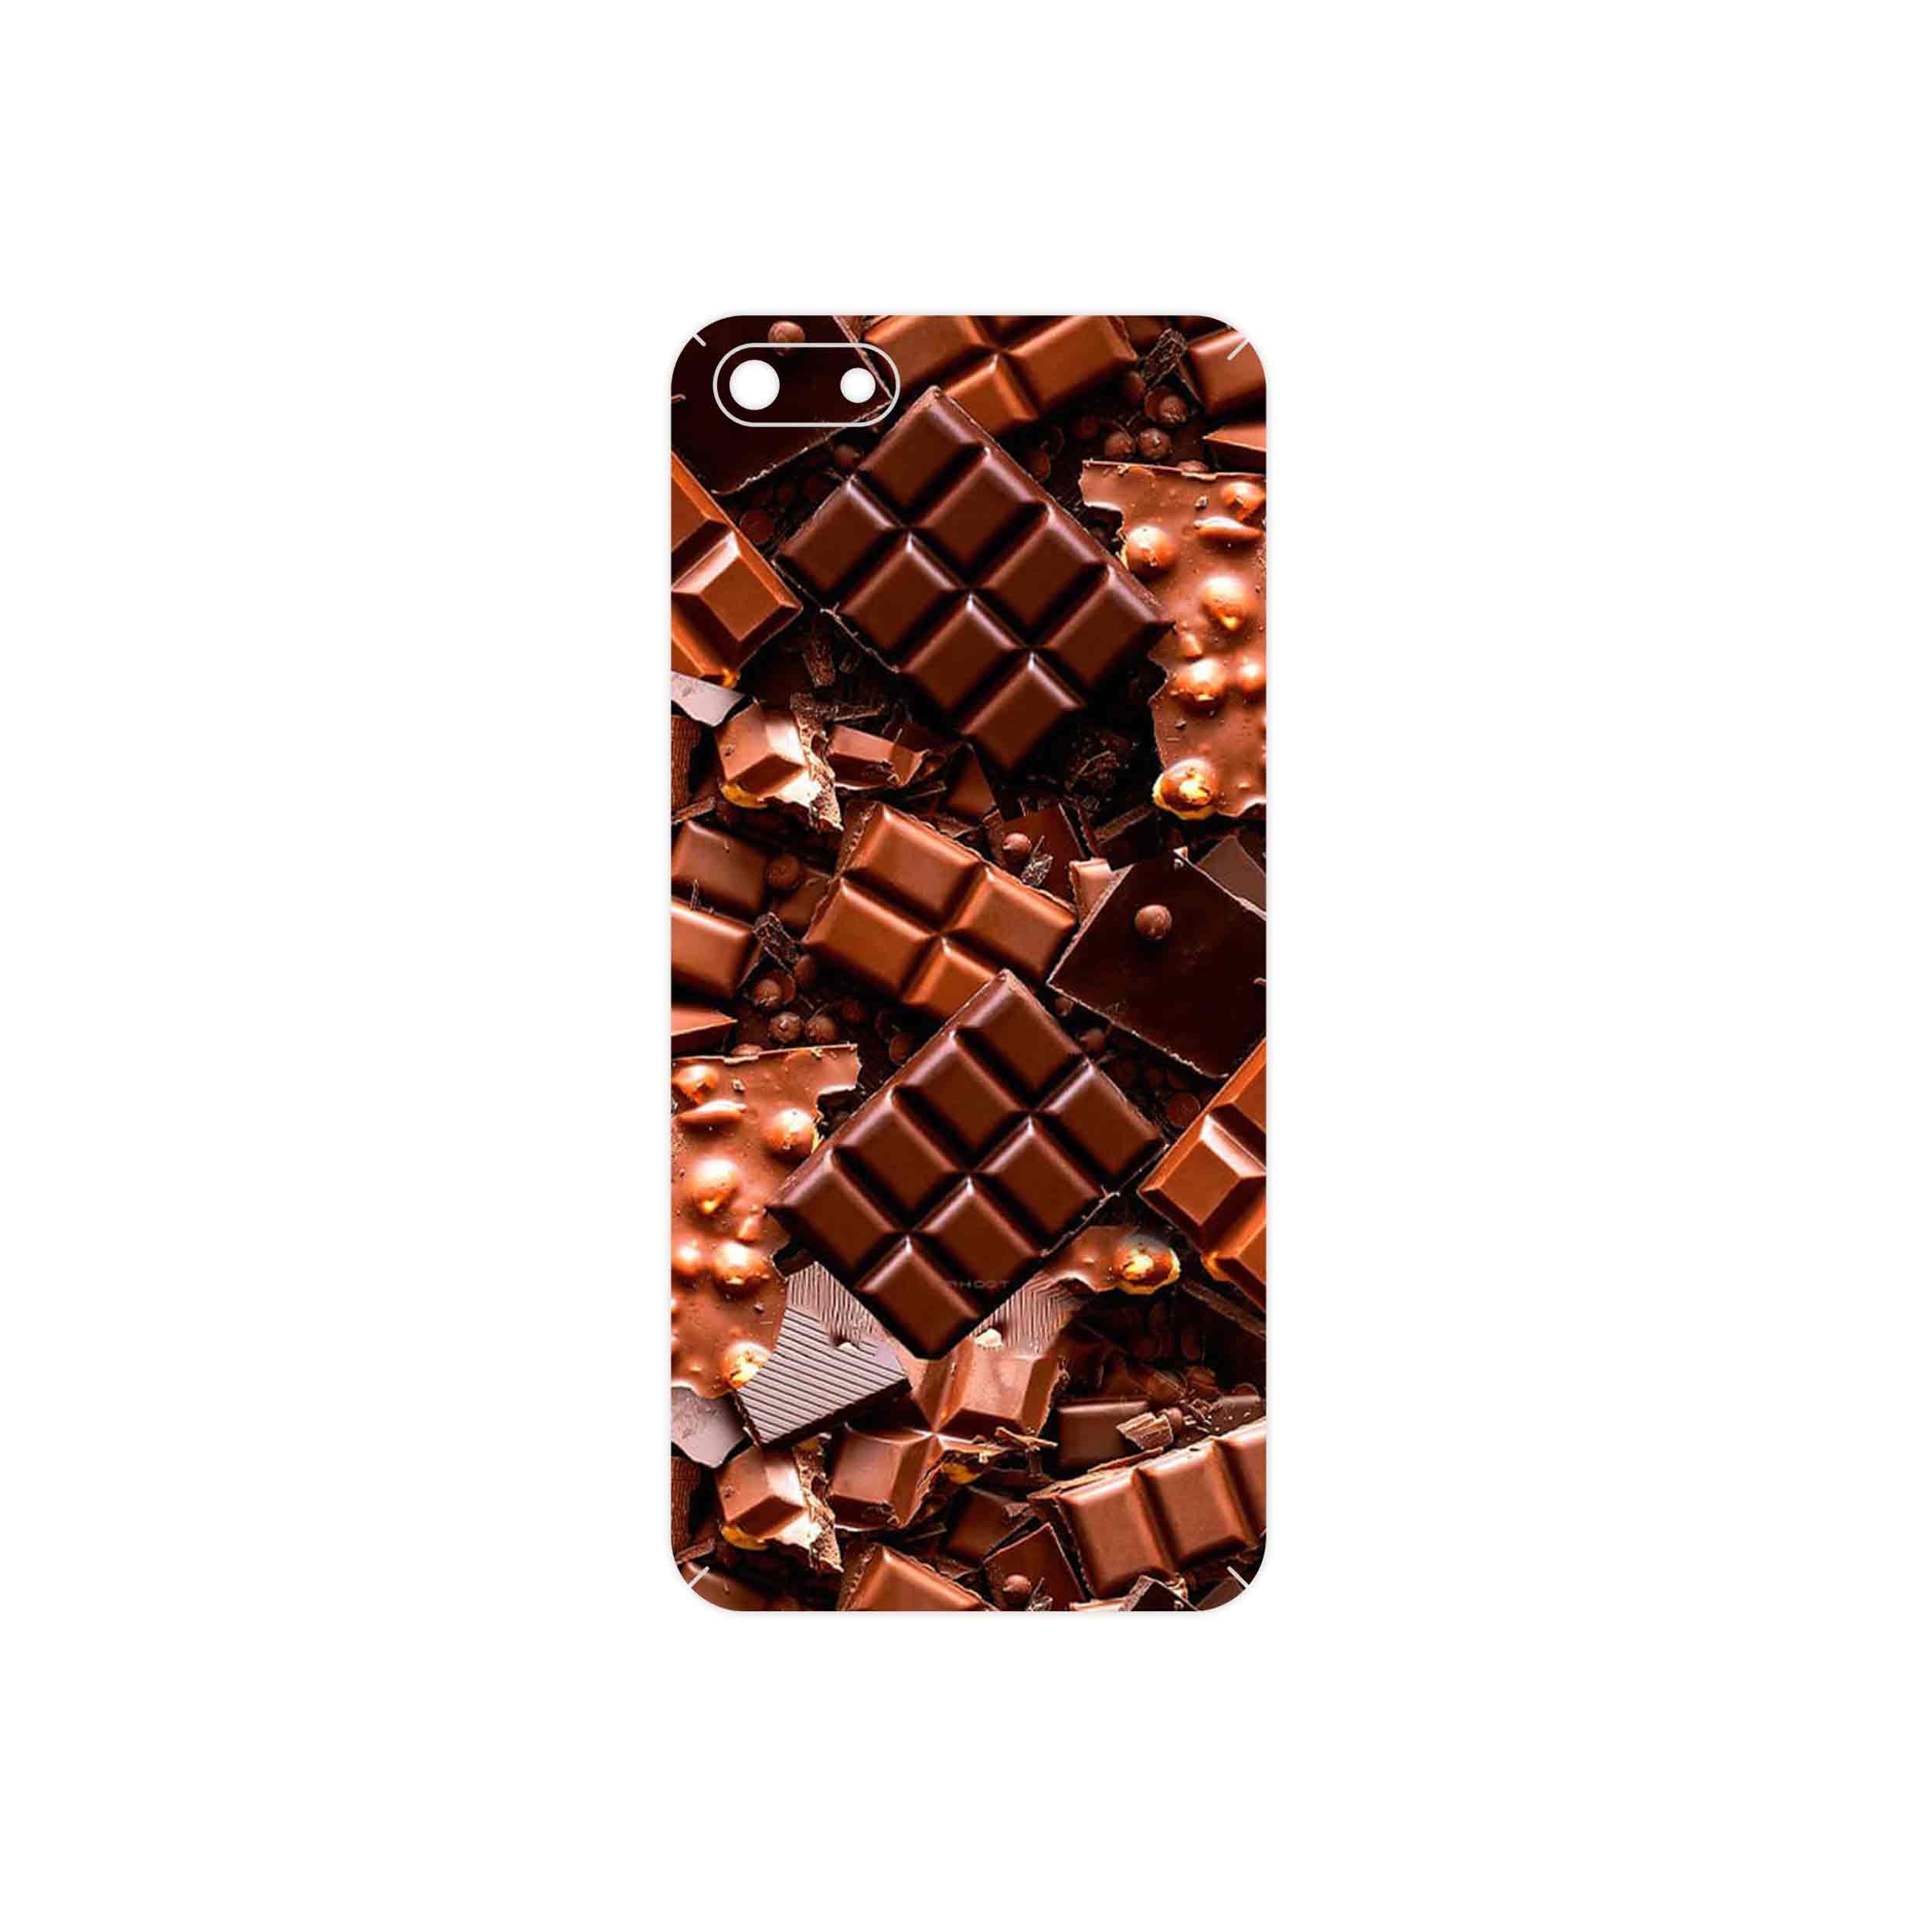 برچسب پوششی ماهوت مدل Chocolate مناسب برای گوشی موبایل آنر 7S